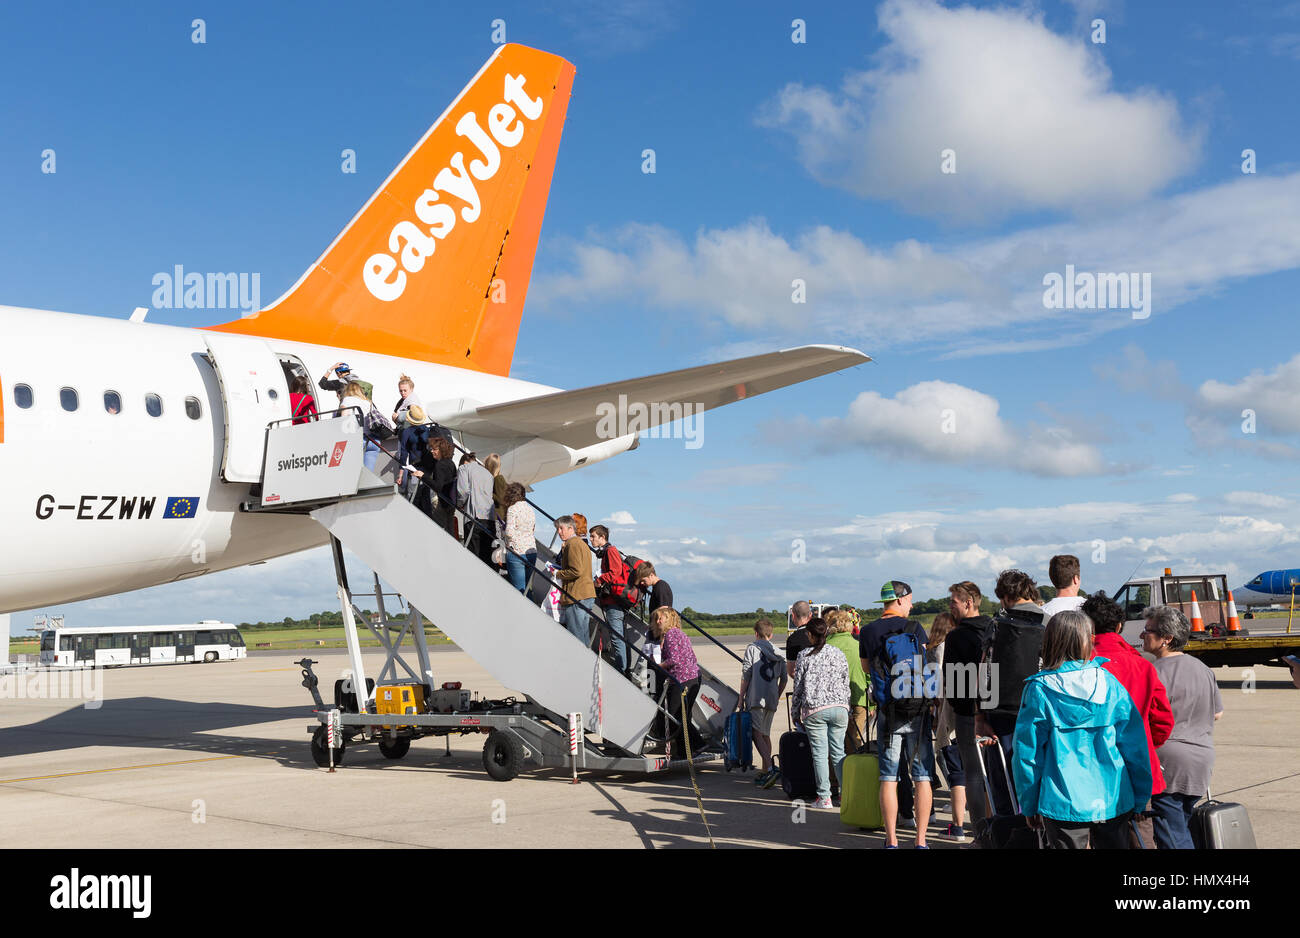 BRISTOL, Reino Unido - 11 de julio, 2016: una cola de pasajeros subir a la cola de un avión de Easyjet en el aeropuerto de Bristol en un día soleado. Foto de stock